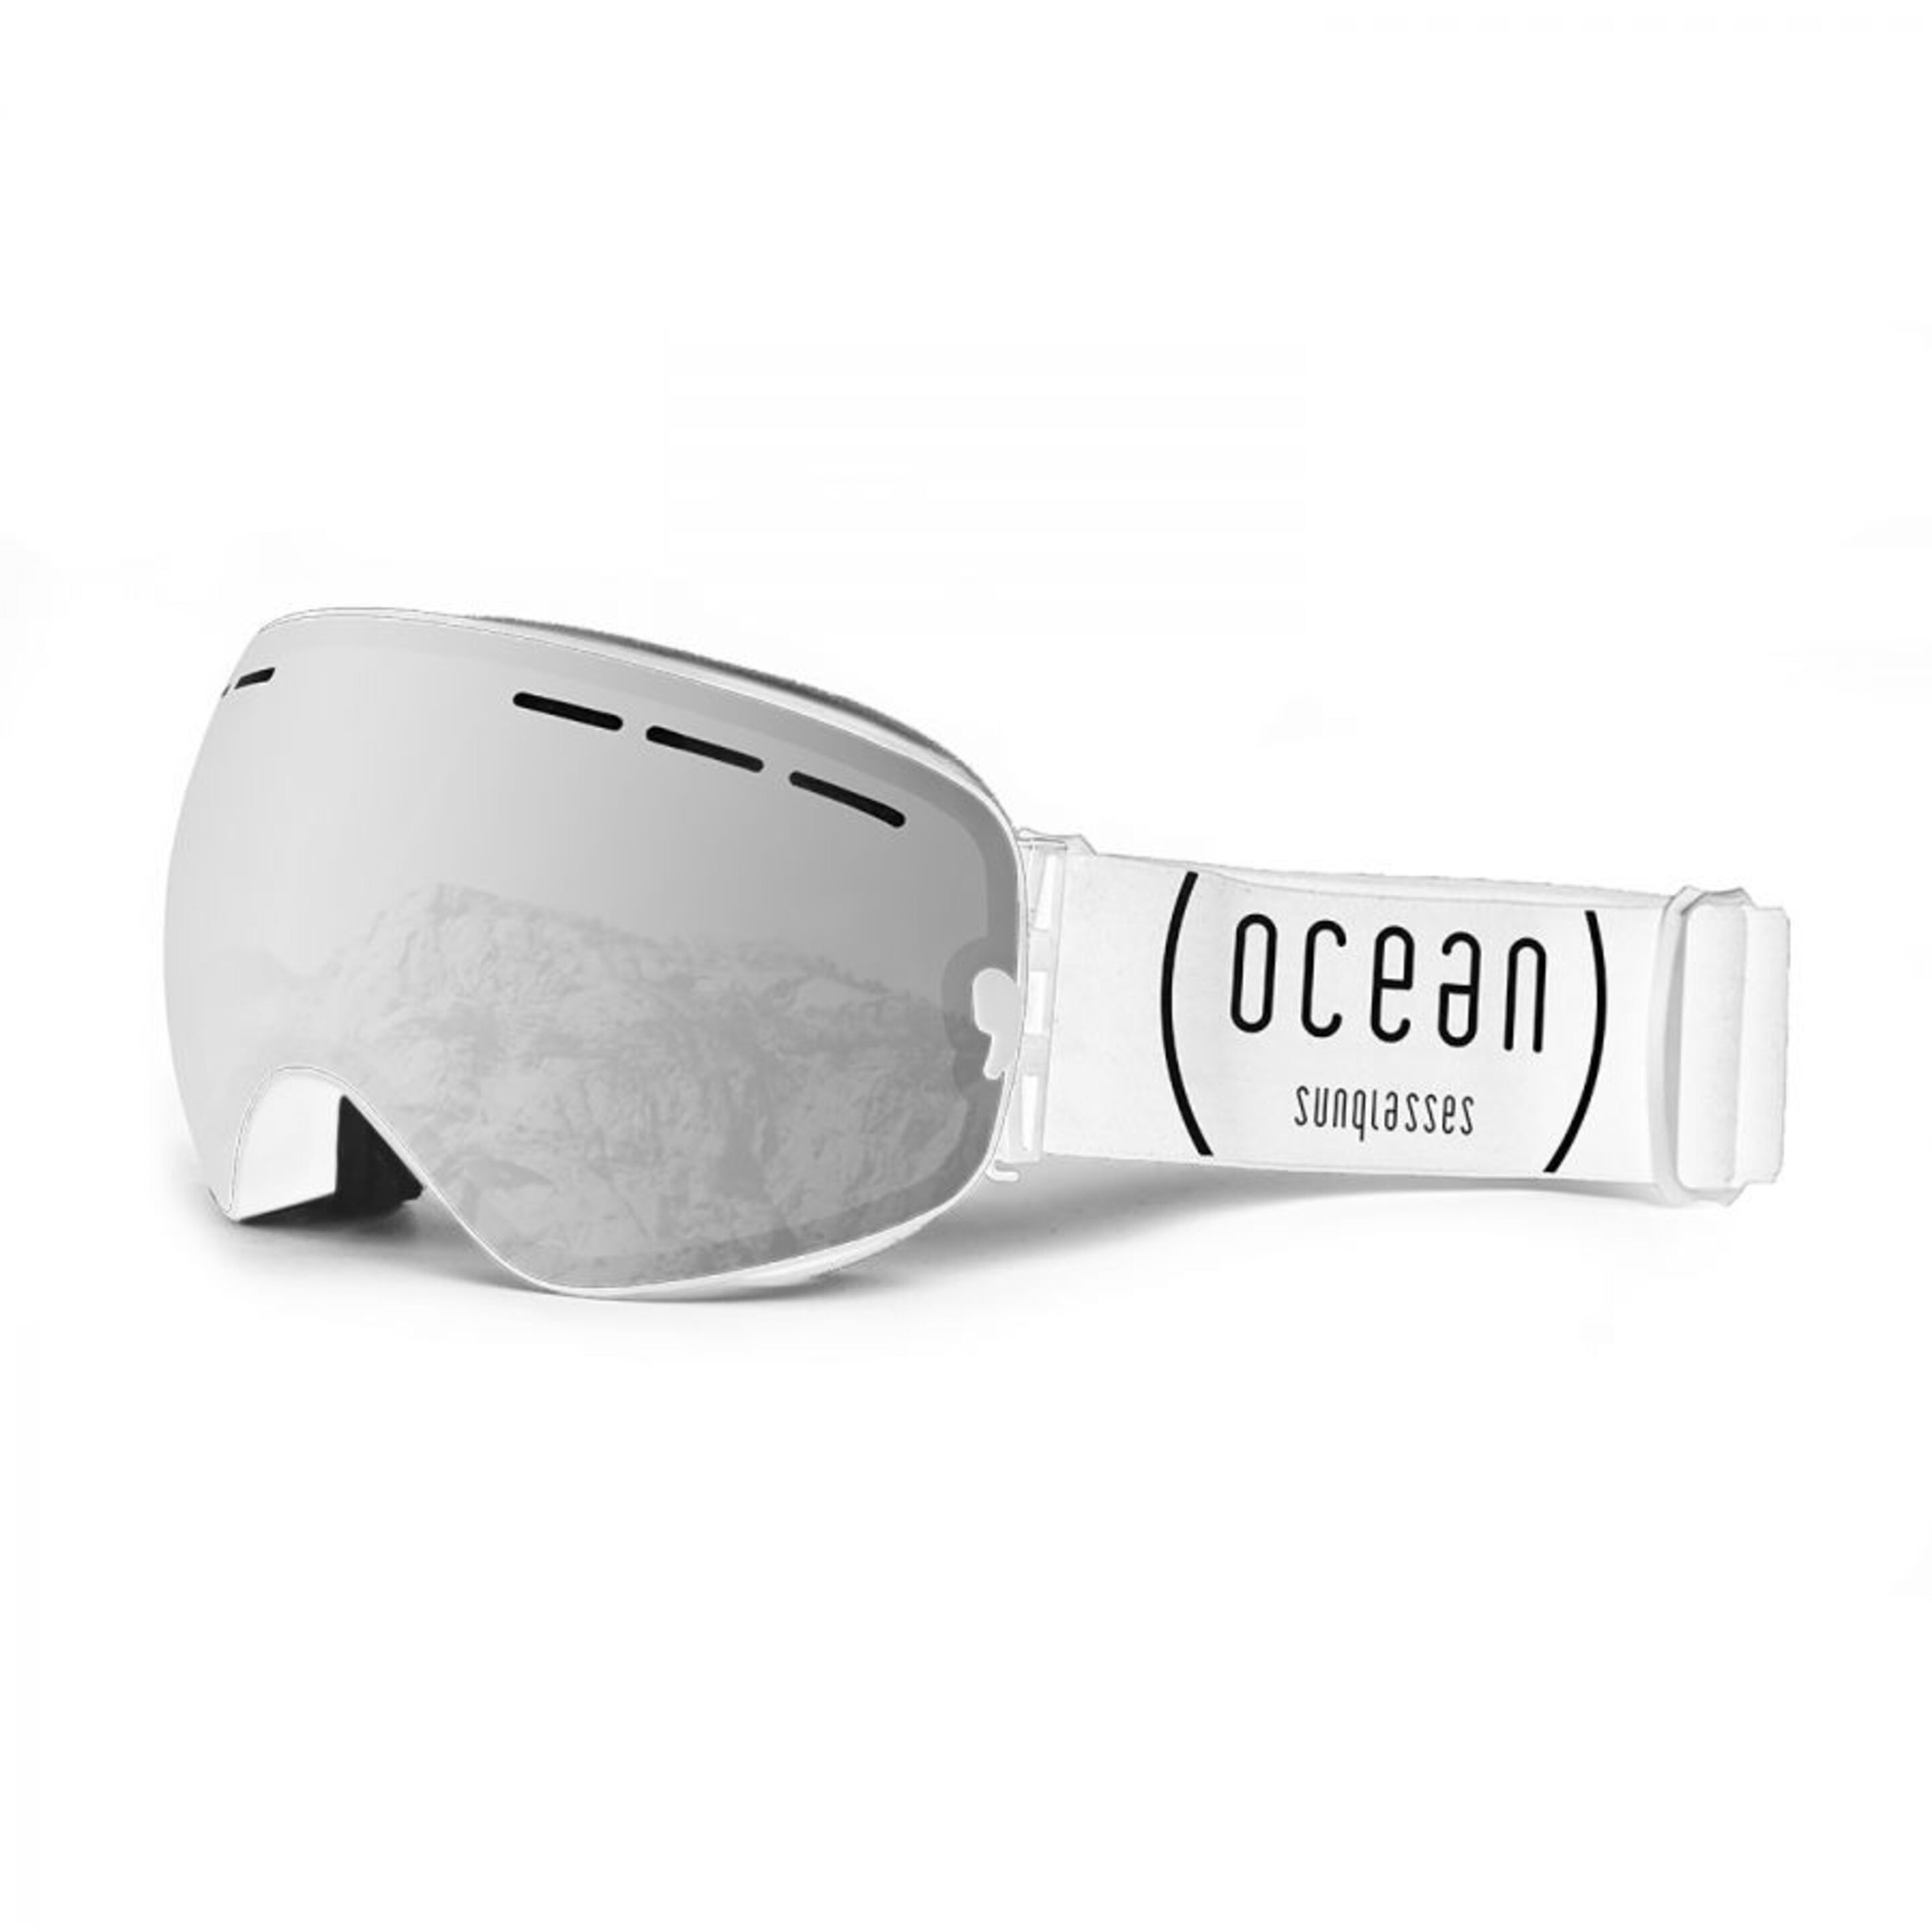 Óculos De Ski Cervino Ocean Sunglasses - blanco - 